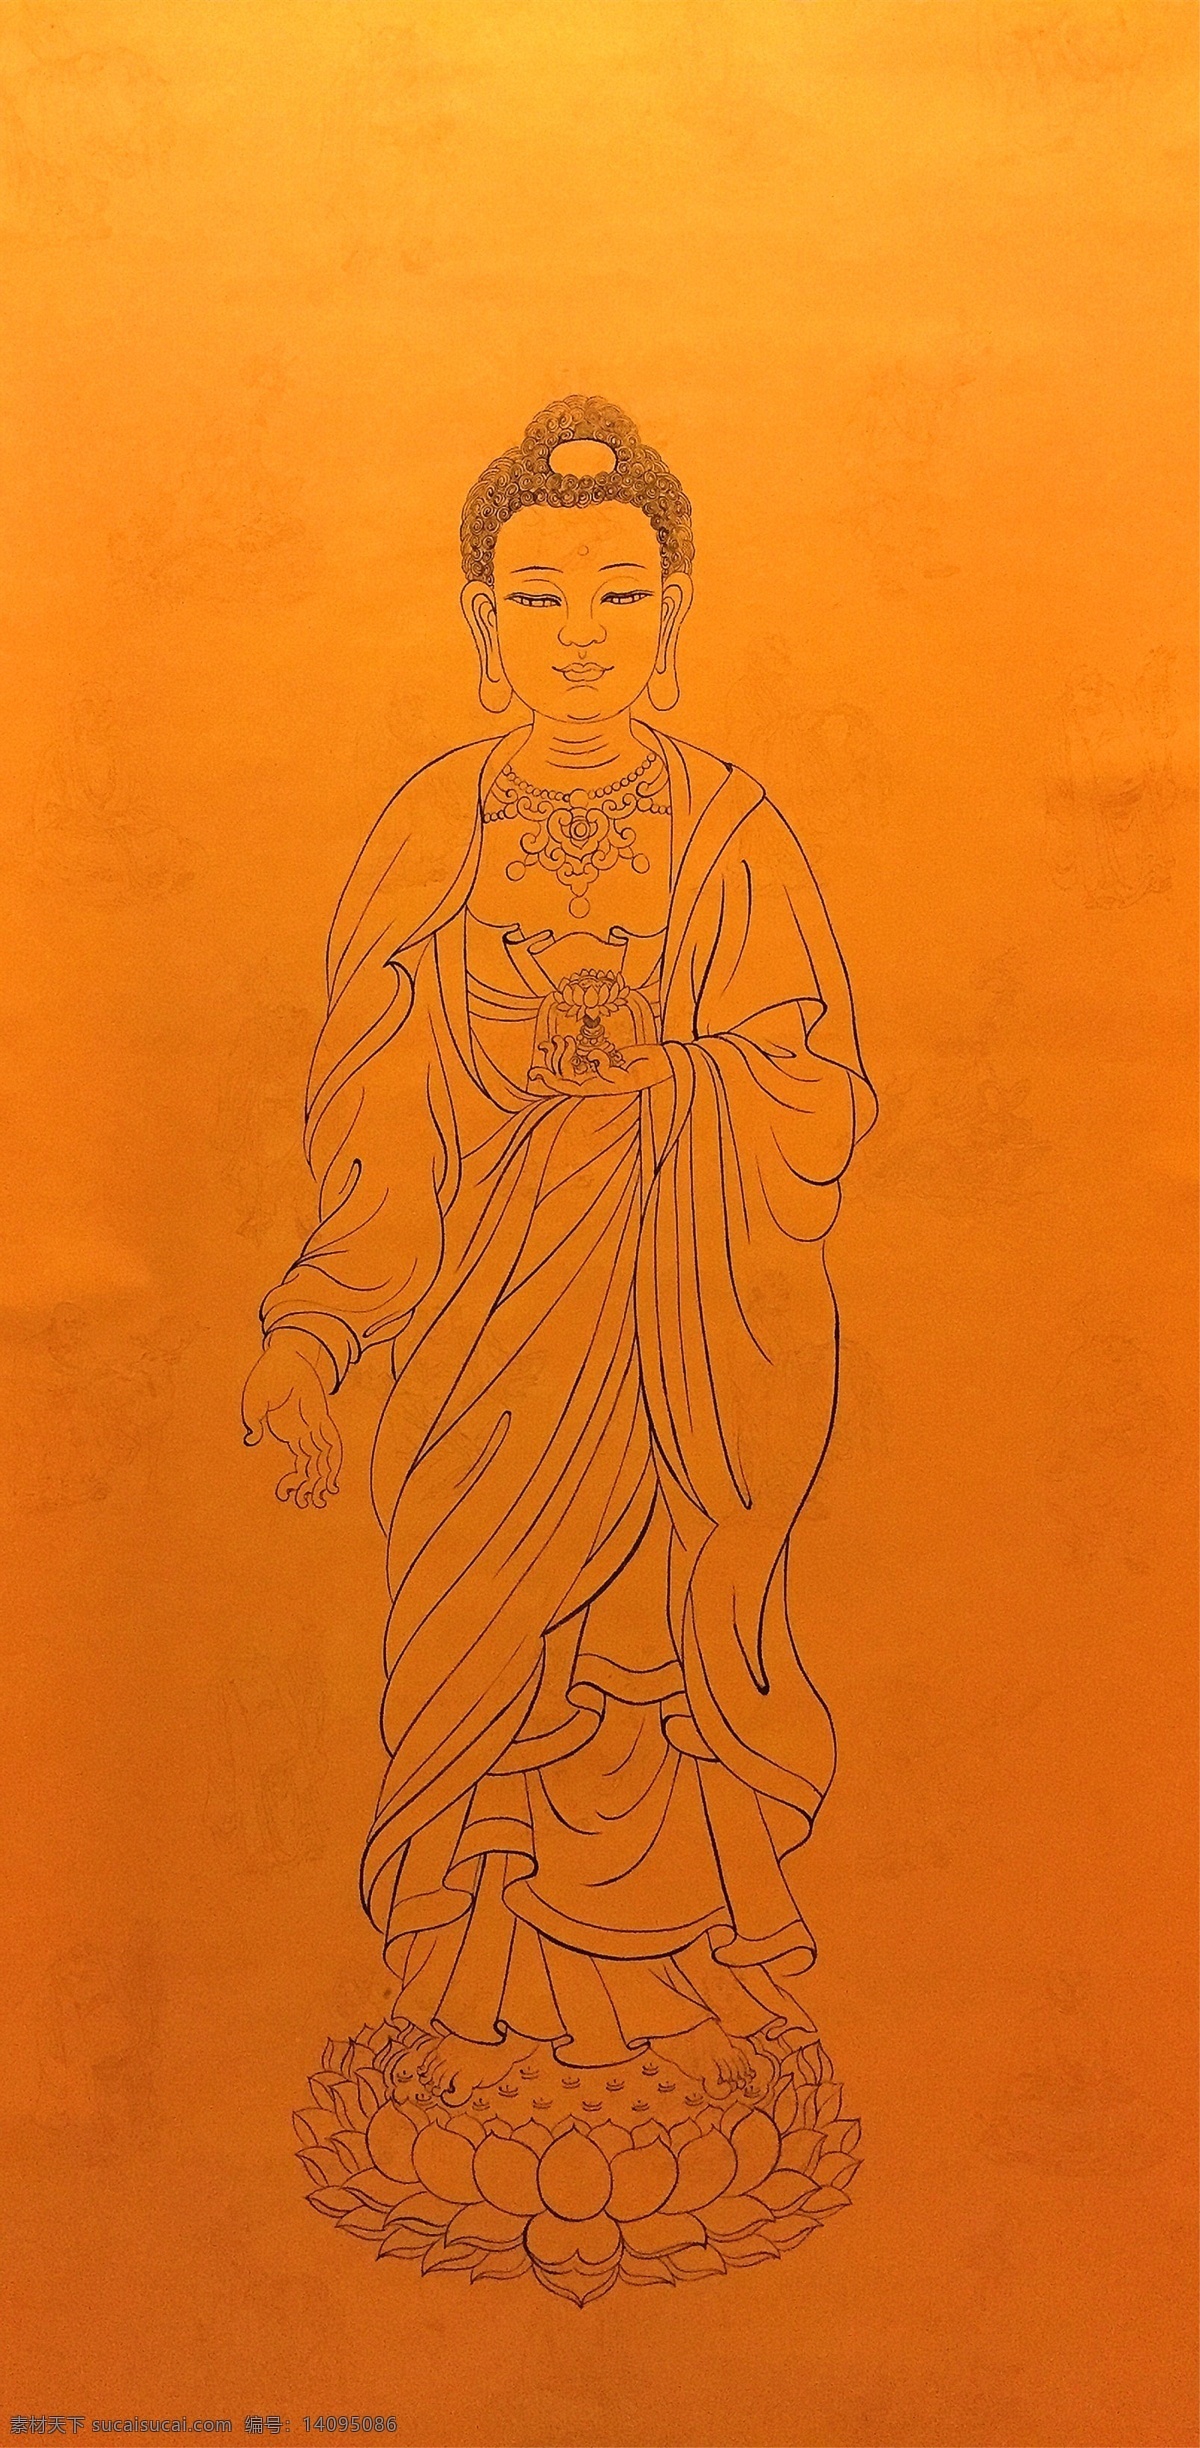 阿弥陀佛 佛像 佛教 白描 线描 文化艺术 宗教信仰